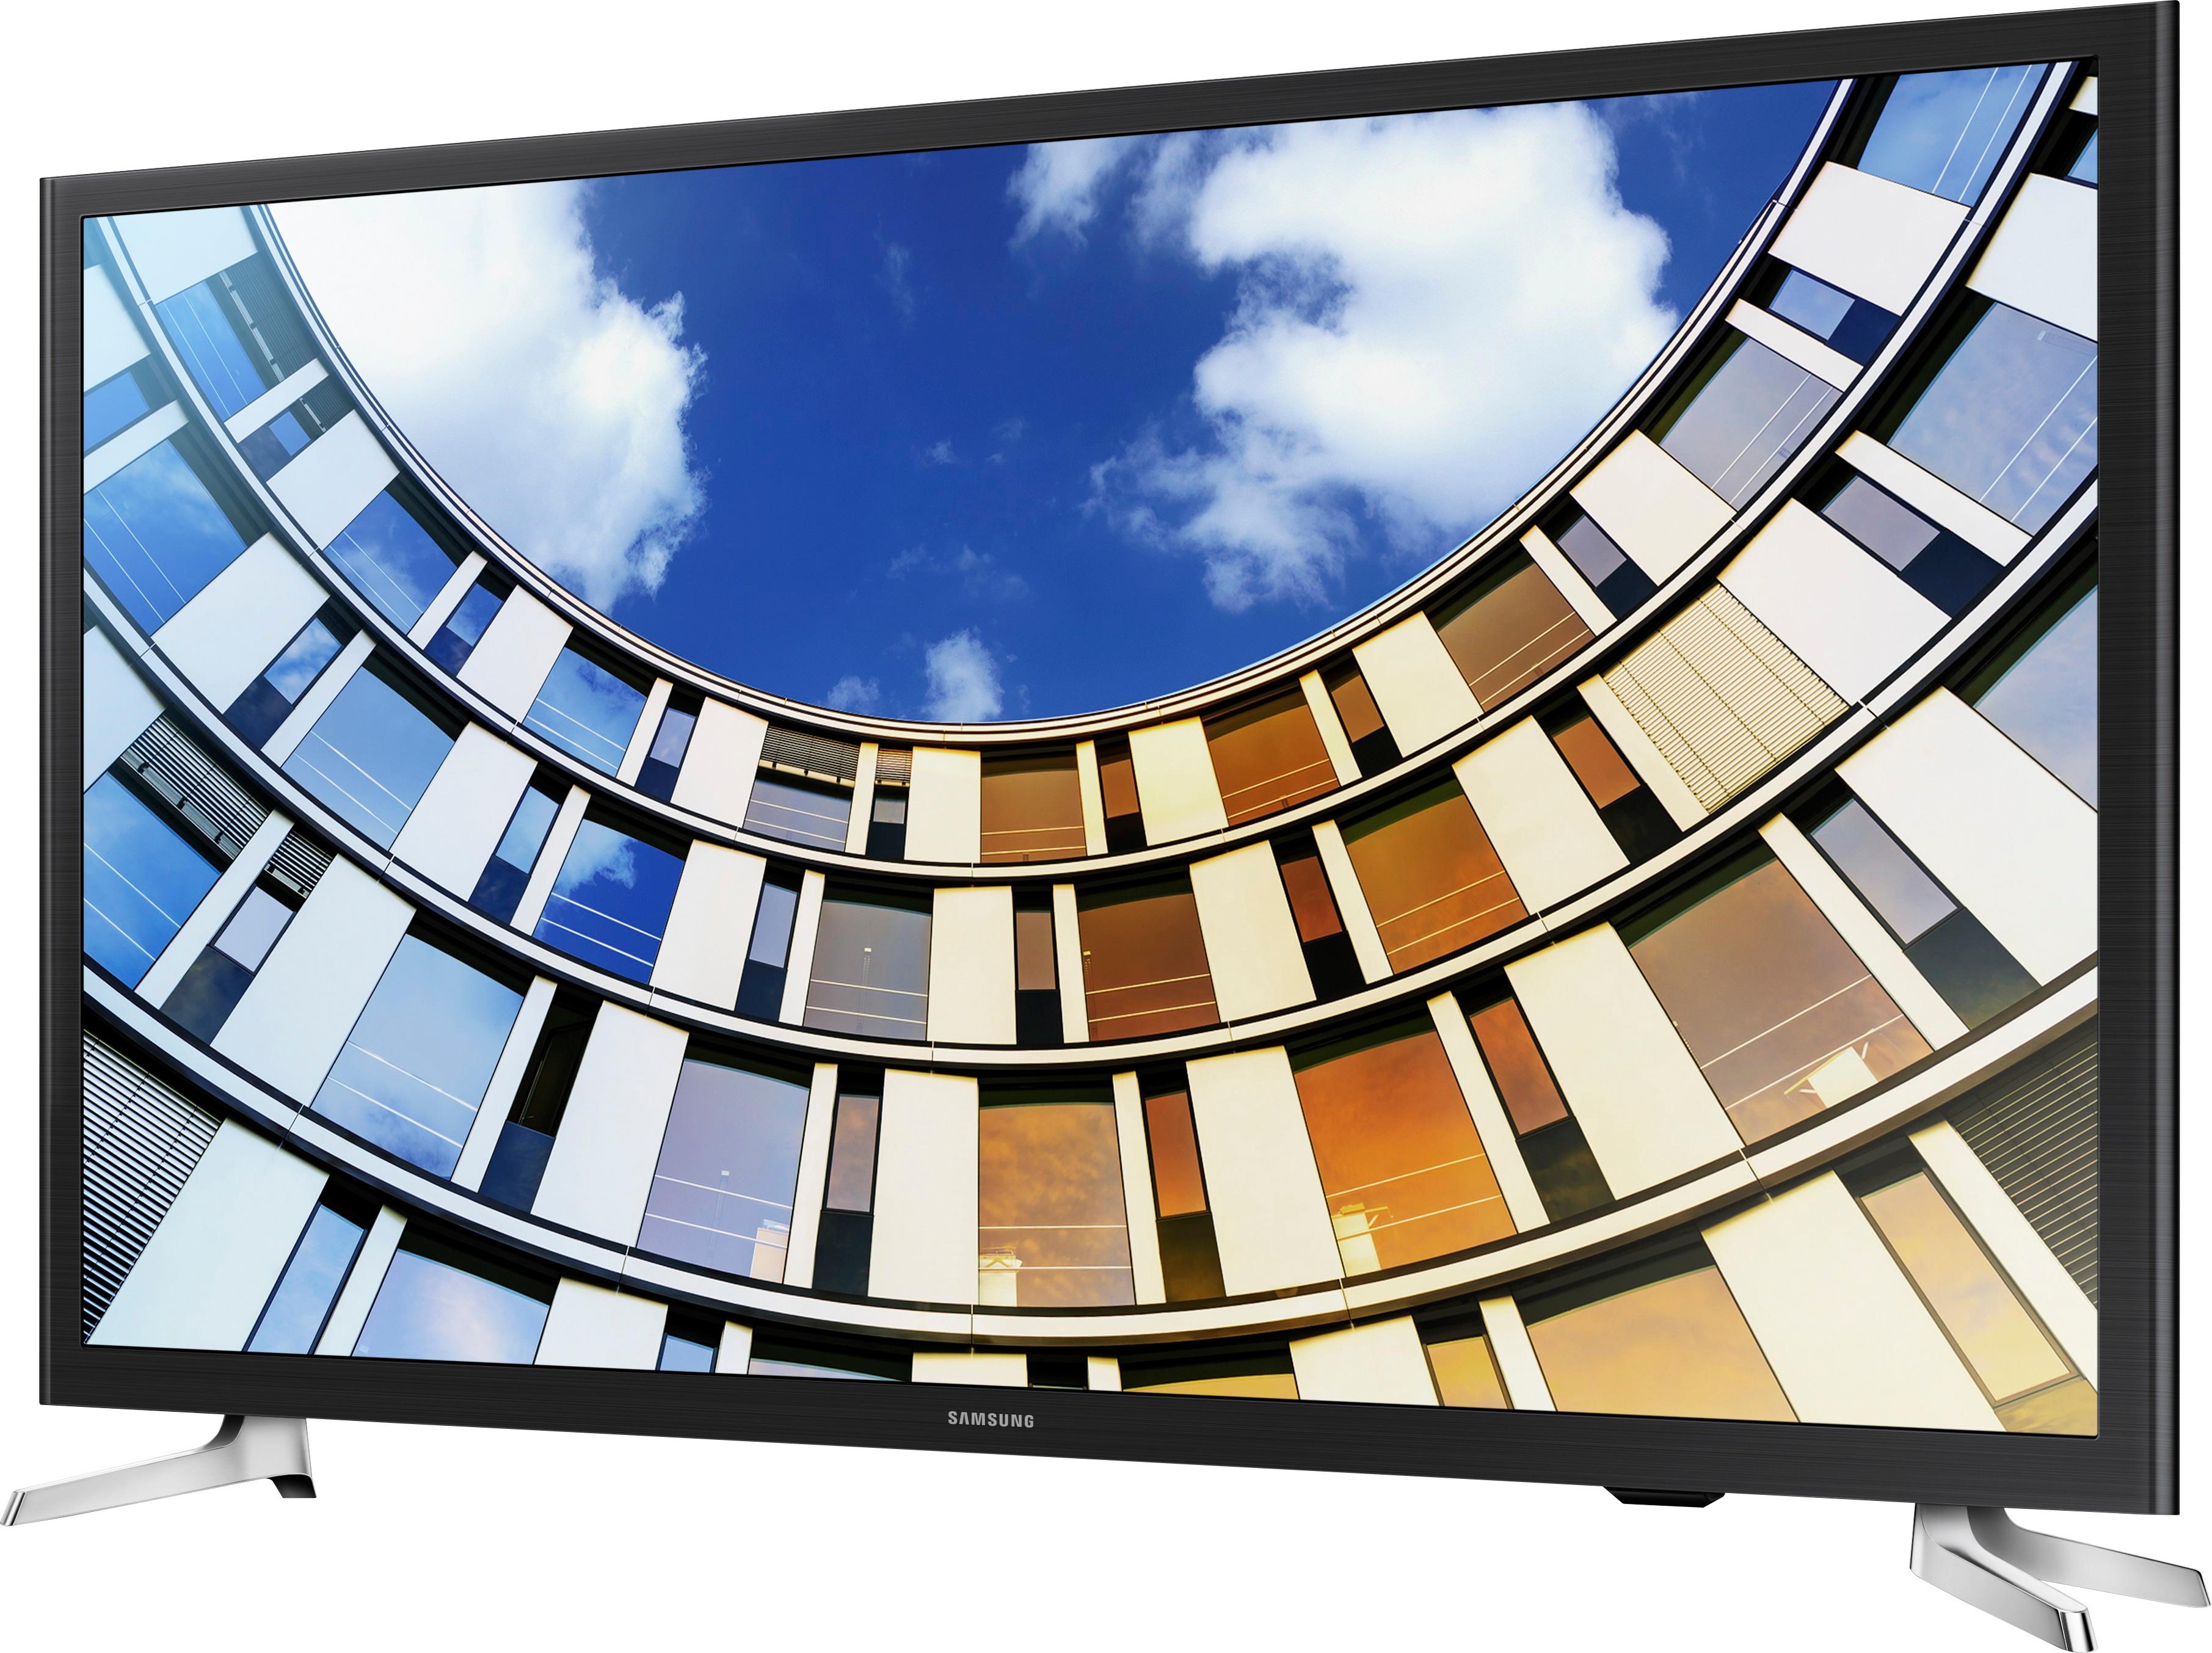 LED TVs LED TV Deals Best Buy